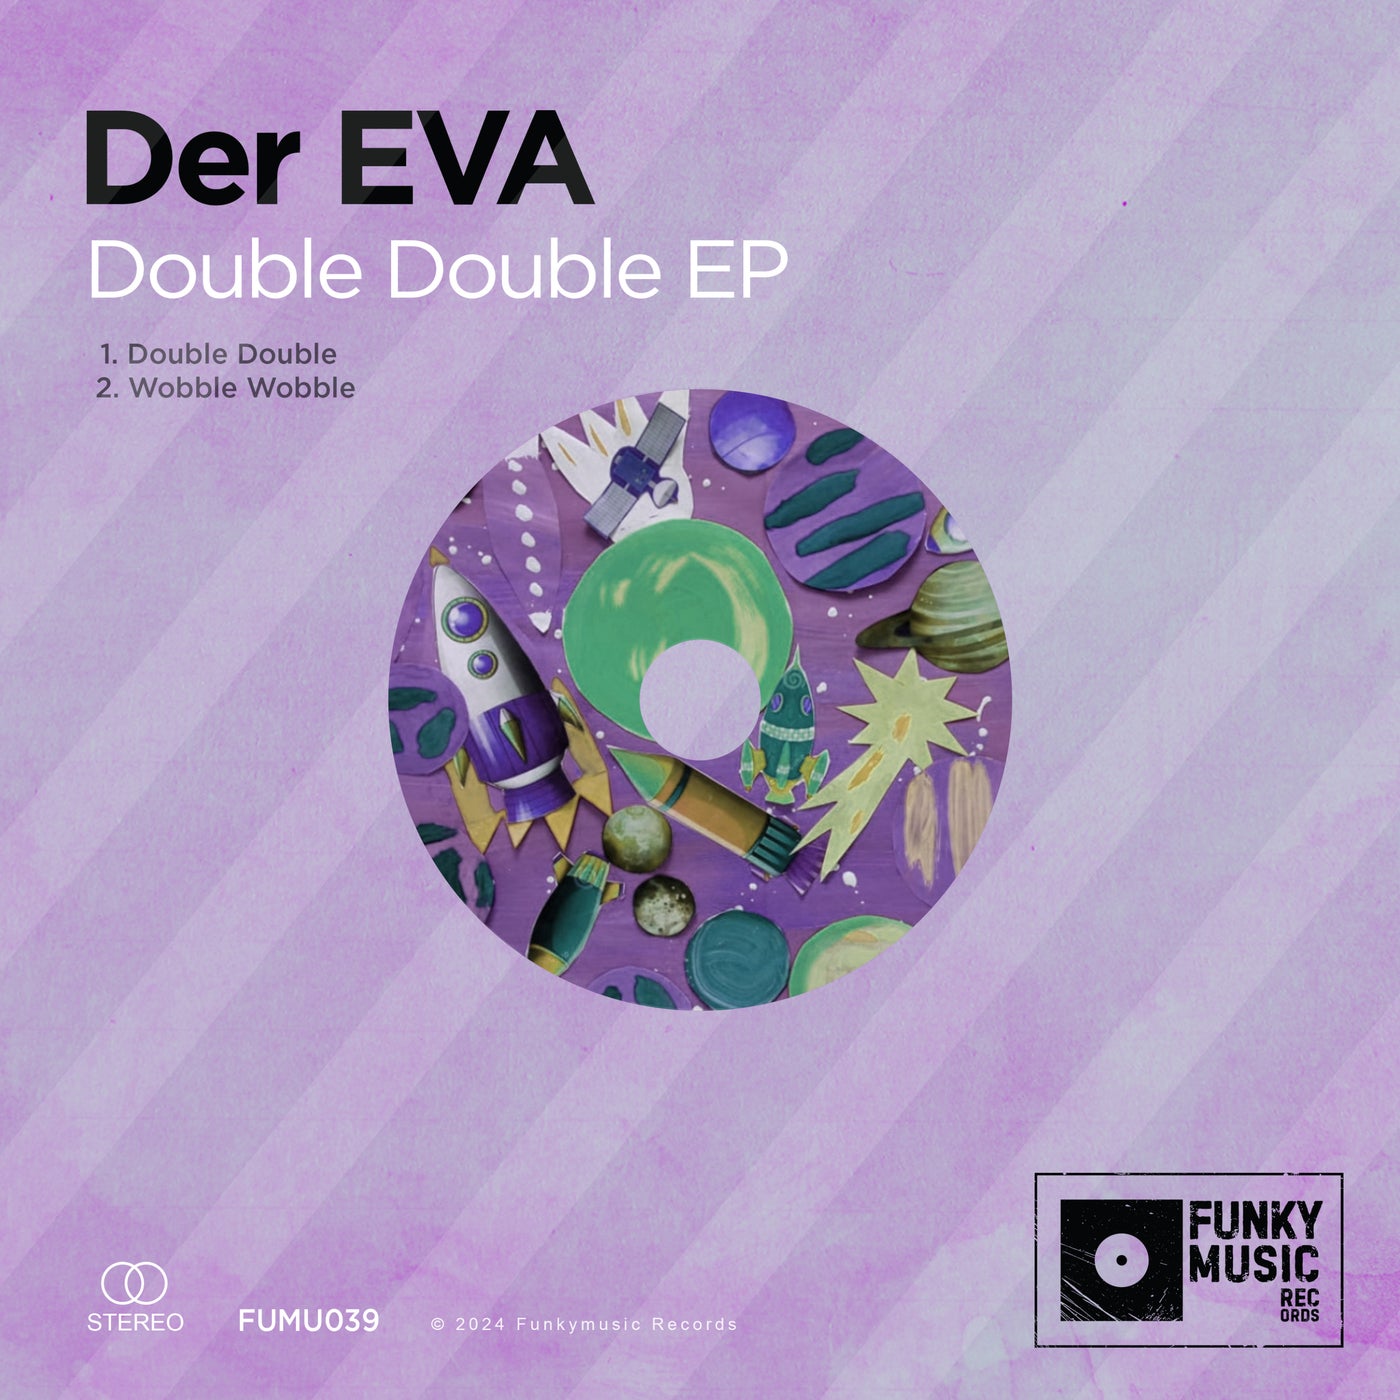 Double Double EP